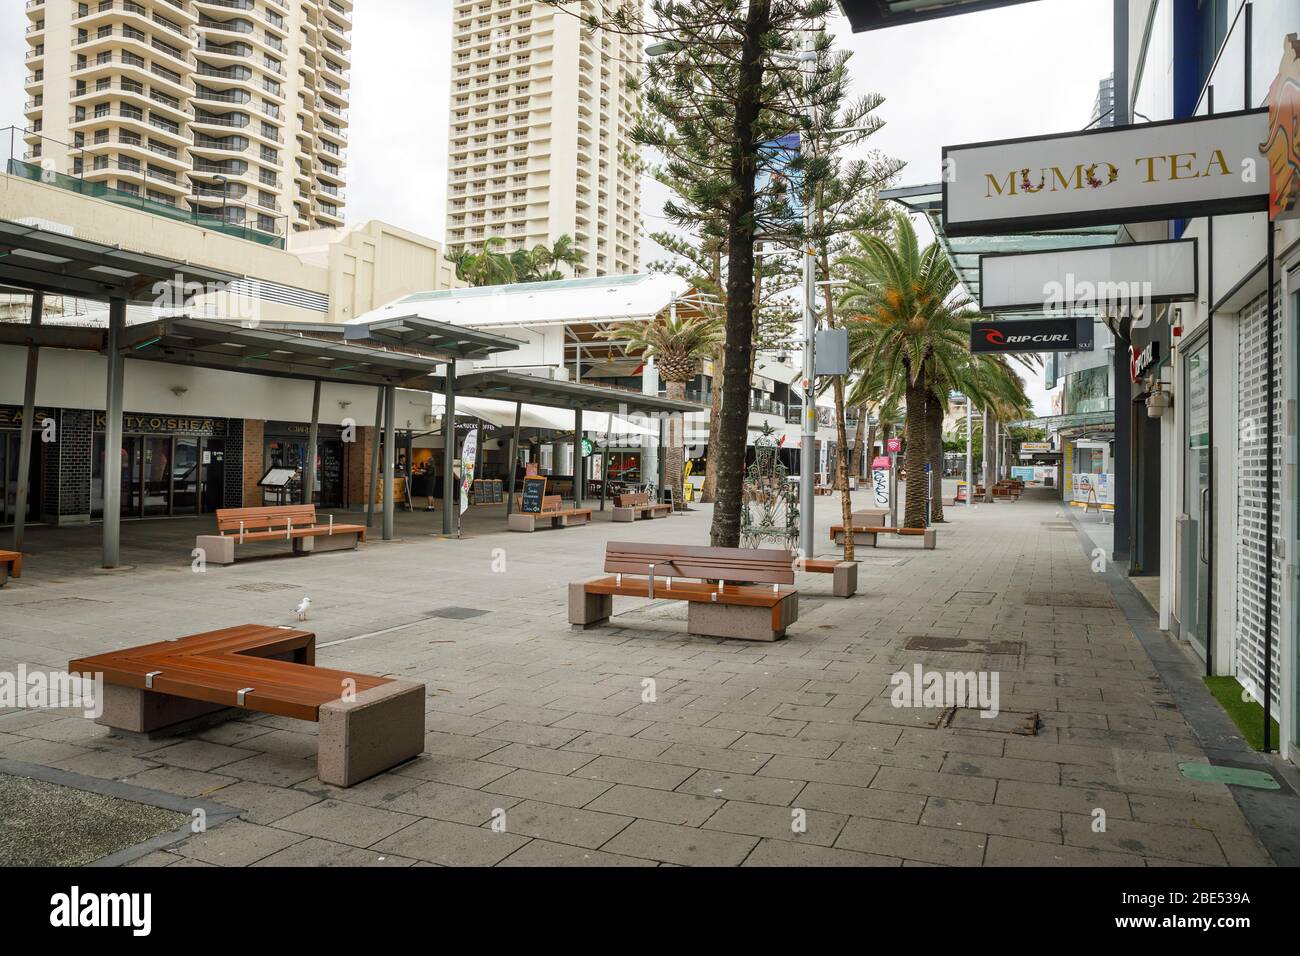 Surfers Paradise, Australie - 8 avril 2020: Le coronavirus a verrouillé les rues vides du célèbre centre commercial cavill ave à Surfers Paradise, avec un verrouillage de la ville de 19 ans Banque D'Images